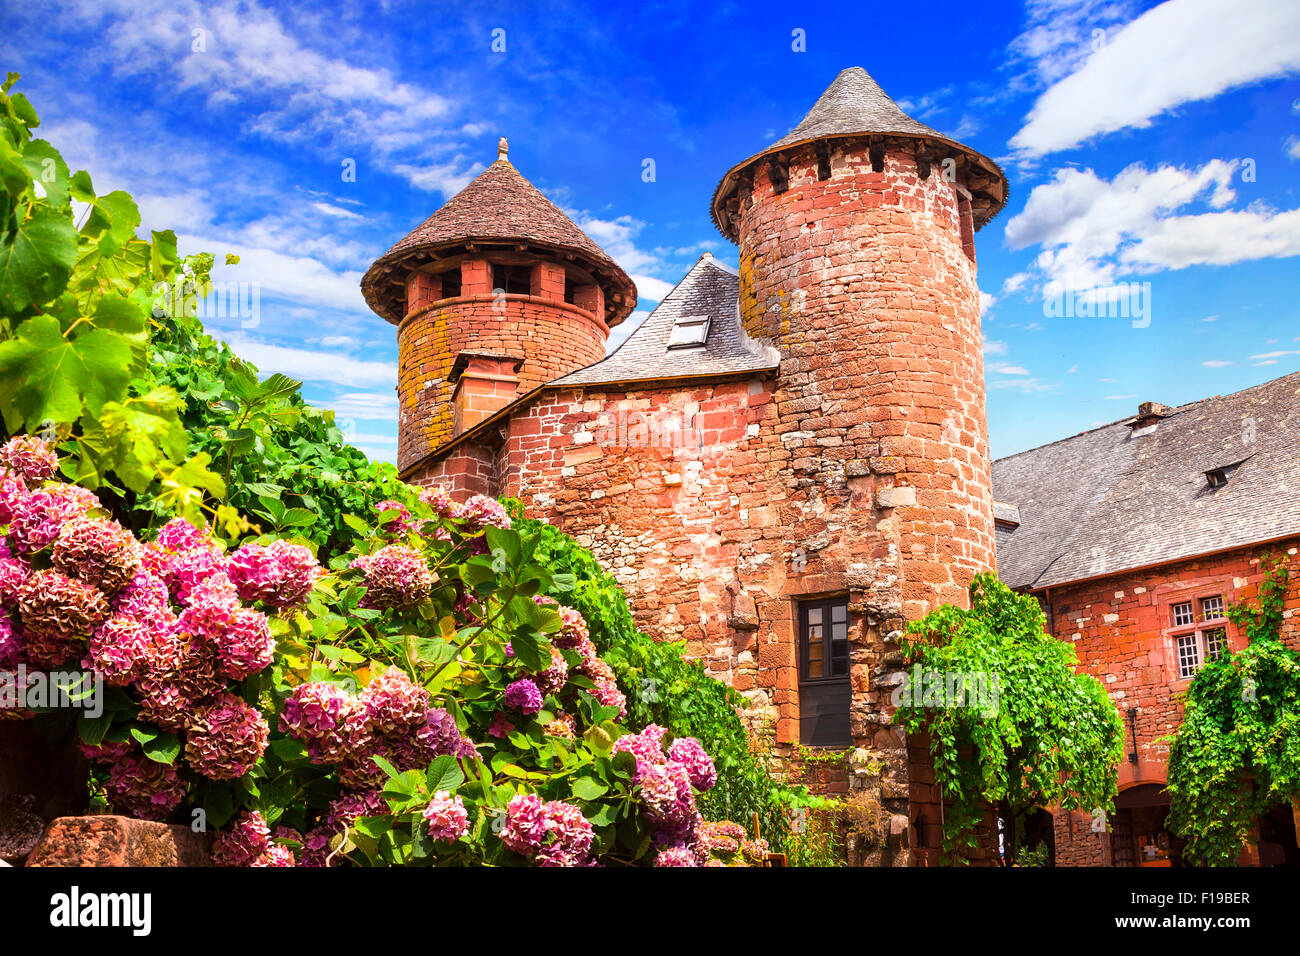 Collonges-la-Rouge - considerando uno de los pueblos más bellos de Francia Foto de stock